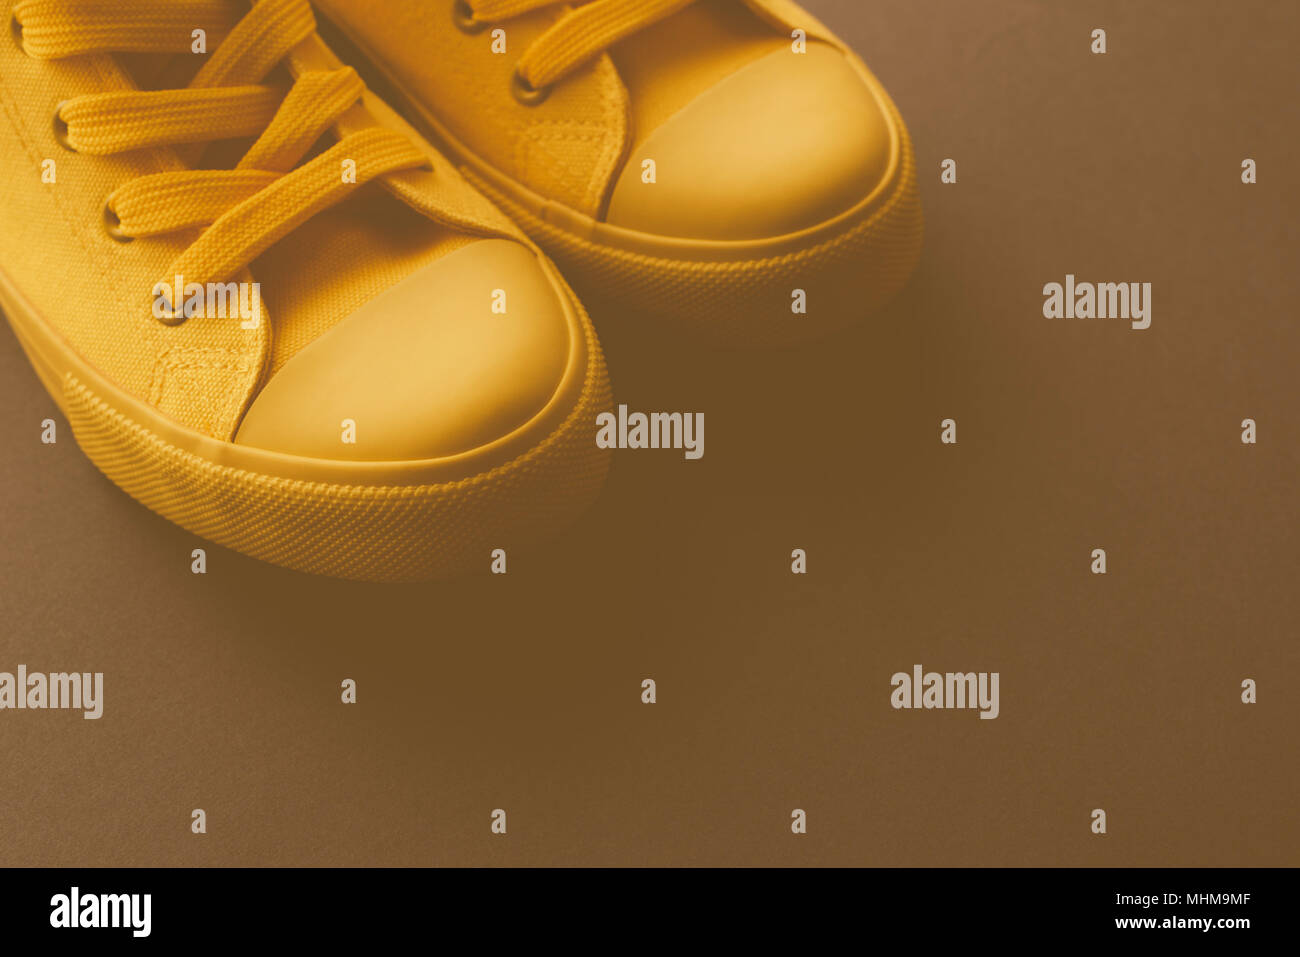 Marke neue gelbe Sneakers auf den Boden, Retro getönten Jugend lifestyle Schuhe Konzept mit Kopie Raum Stockfoto